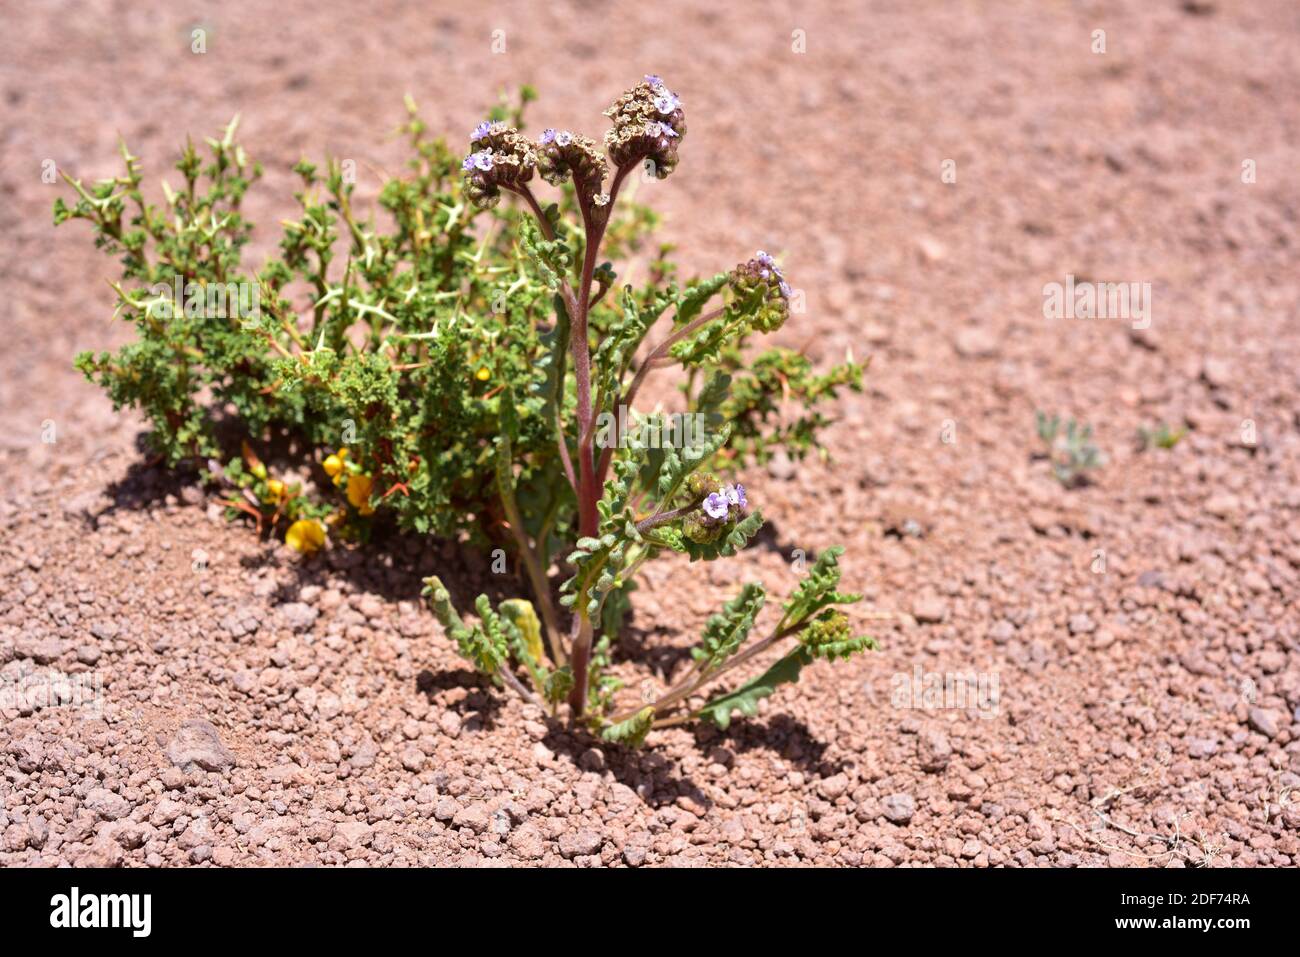 Phacelia è una pianta erbacea originaria del Cile settentrionale e dell'Argentina. Questa foto è stata scattata nella prateria di Puna, in Cile. Foto Stock